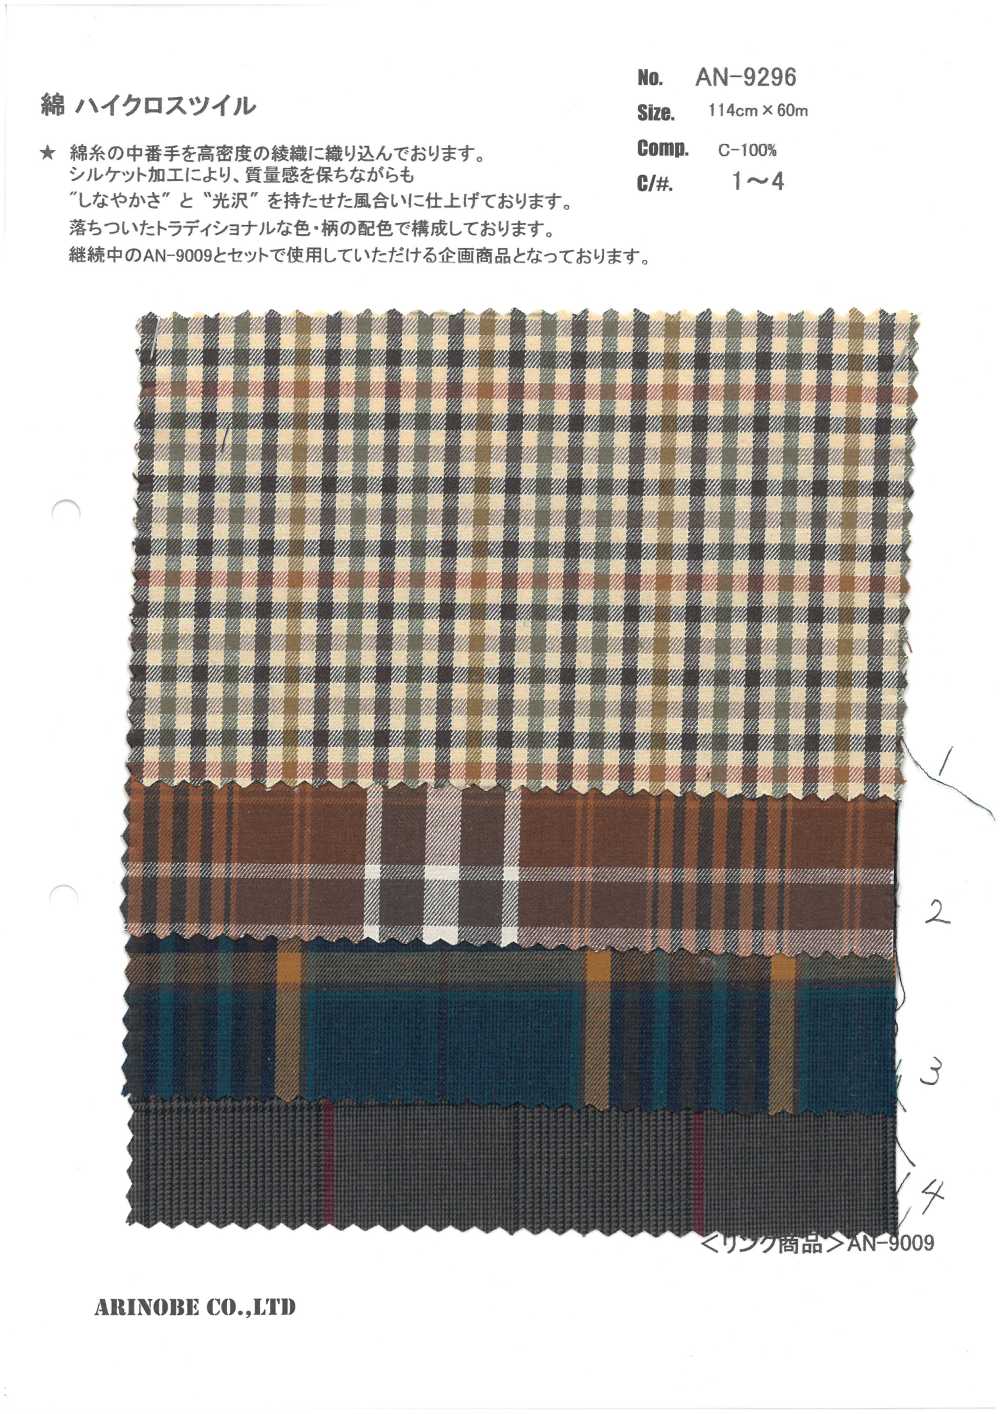 AN-9296 Sarja De Pano Alto De Algodão[Têxtil / Tecido] ARINOBE CO., LTD.